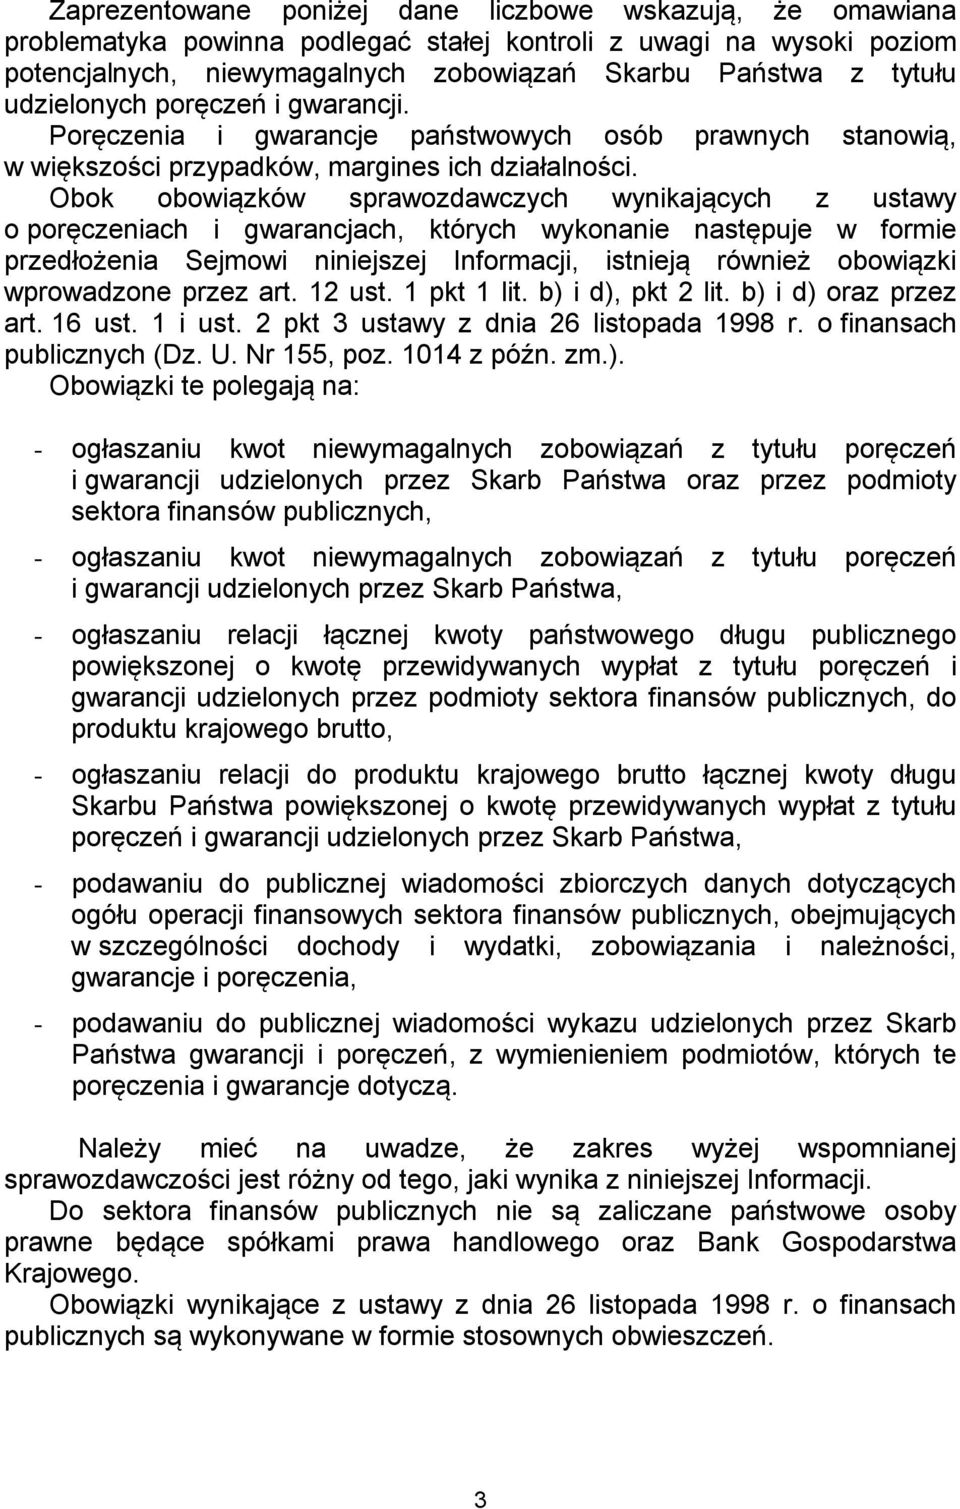 Obok obowiązków sprawozdawczych wynikających z ustawy o poręczeniach i gwarancjach, których wykonanie następuje w formie przedłożenia Sejmowi niniejszej Informacji, istnieją również obowiązki